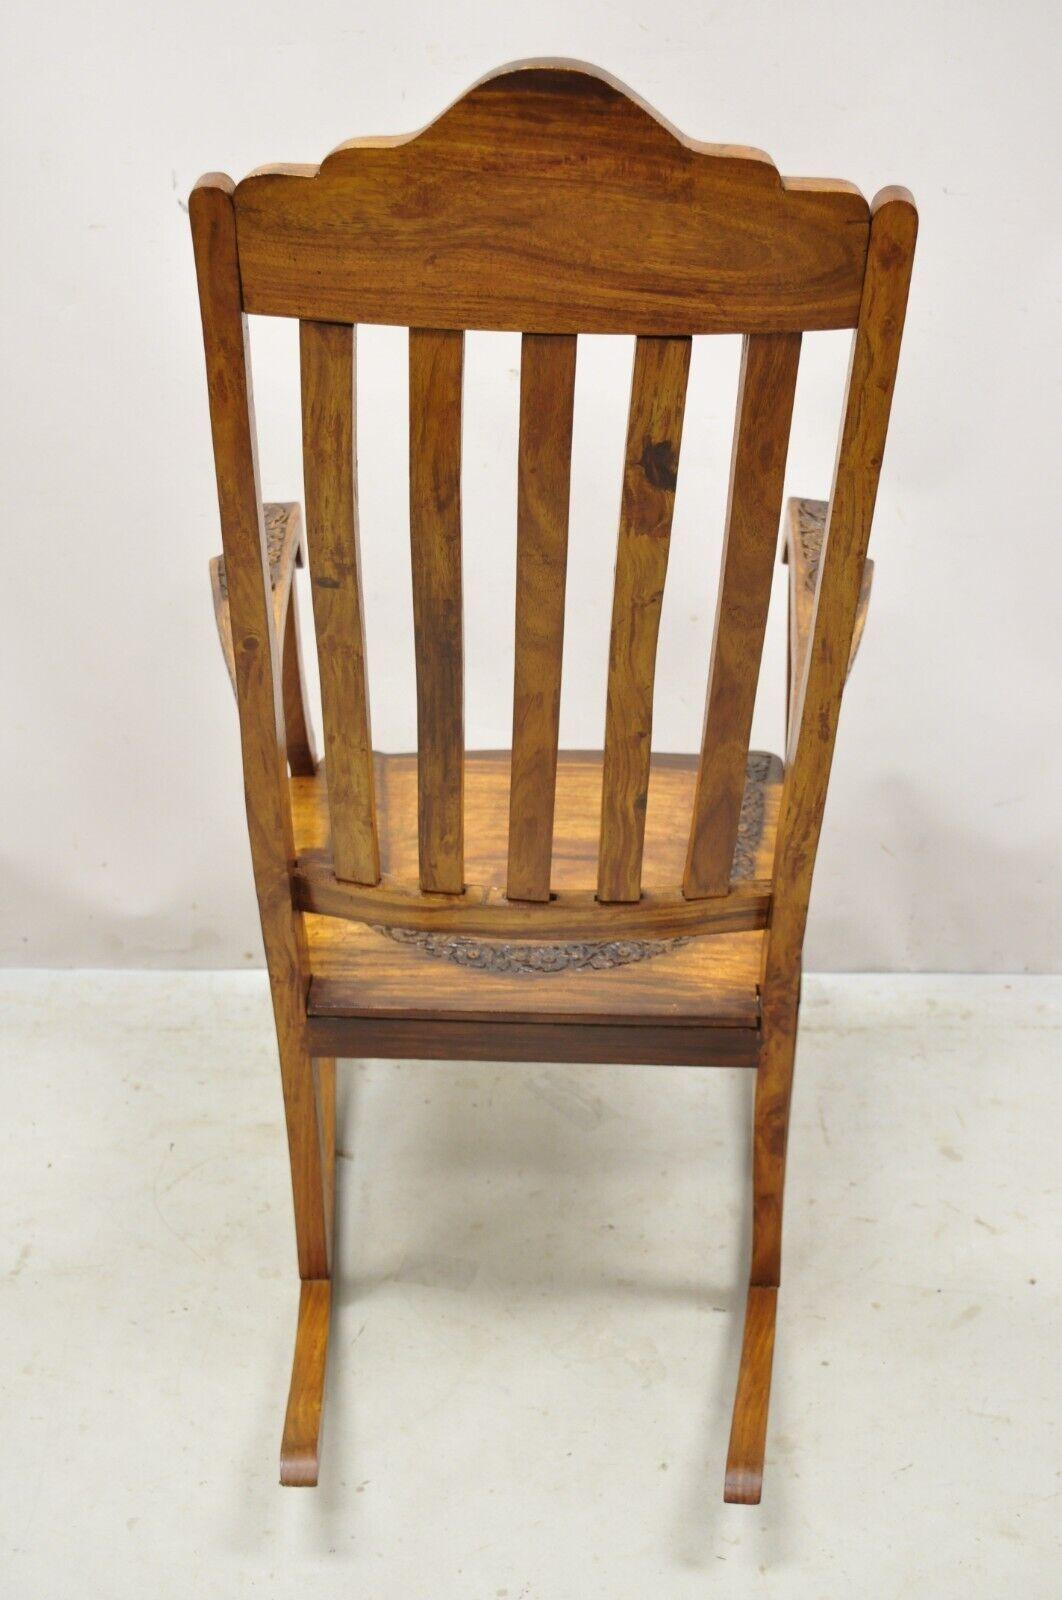 Vintage Anglo Indian Carved Teak Wood Rocking Chair Rocker For Sale 1